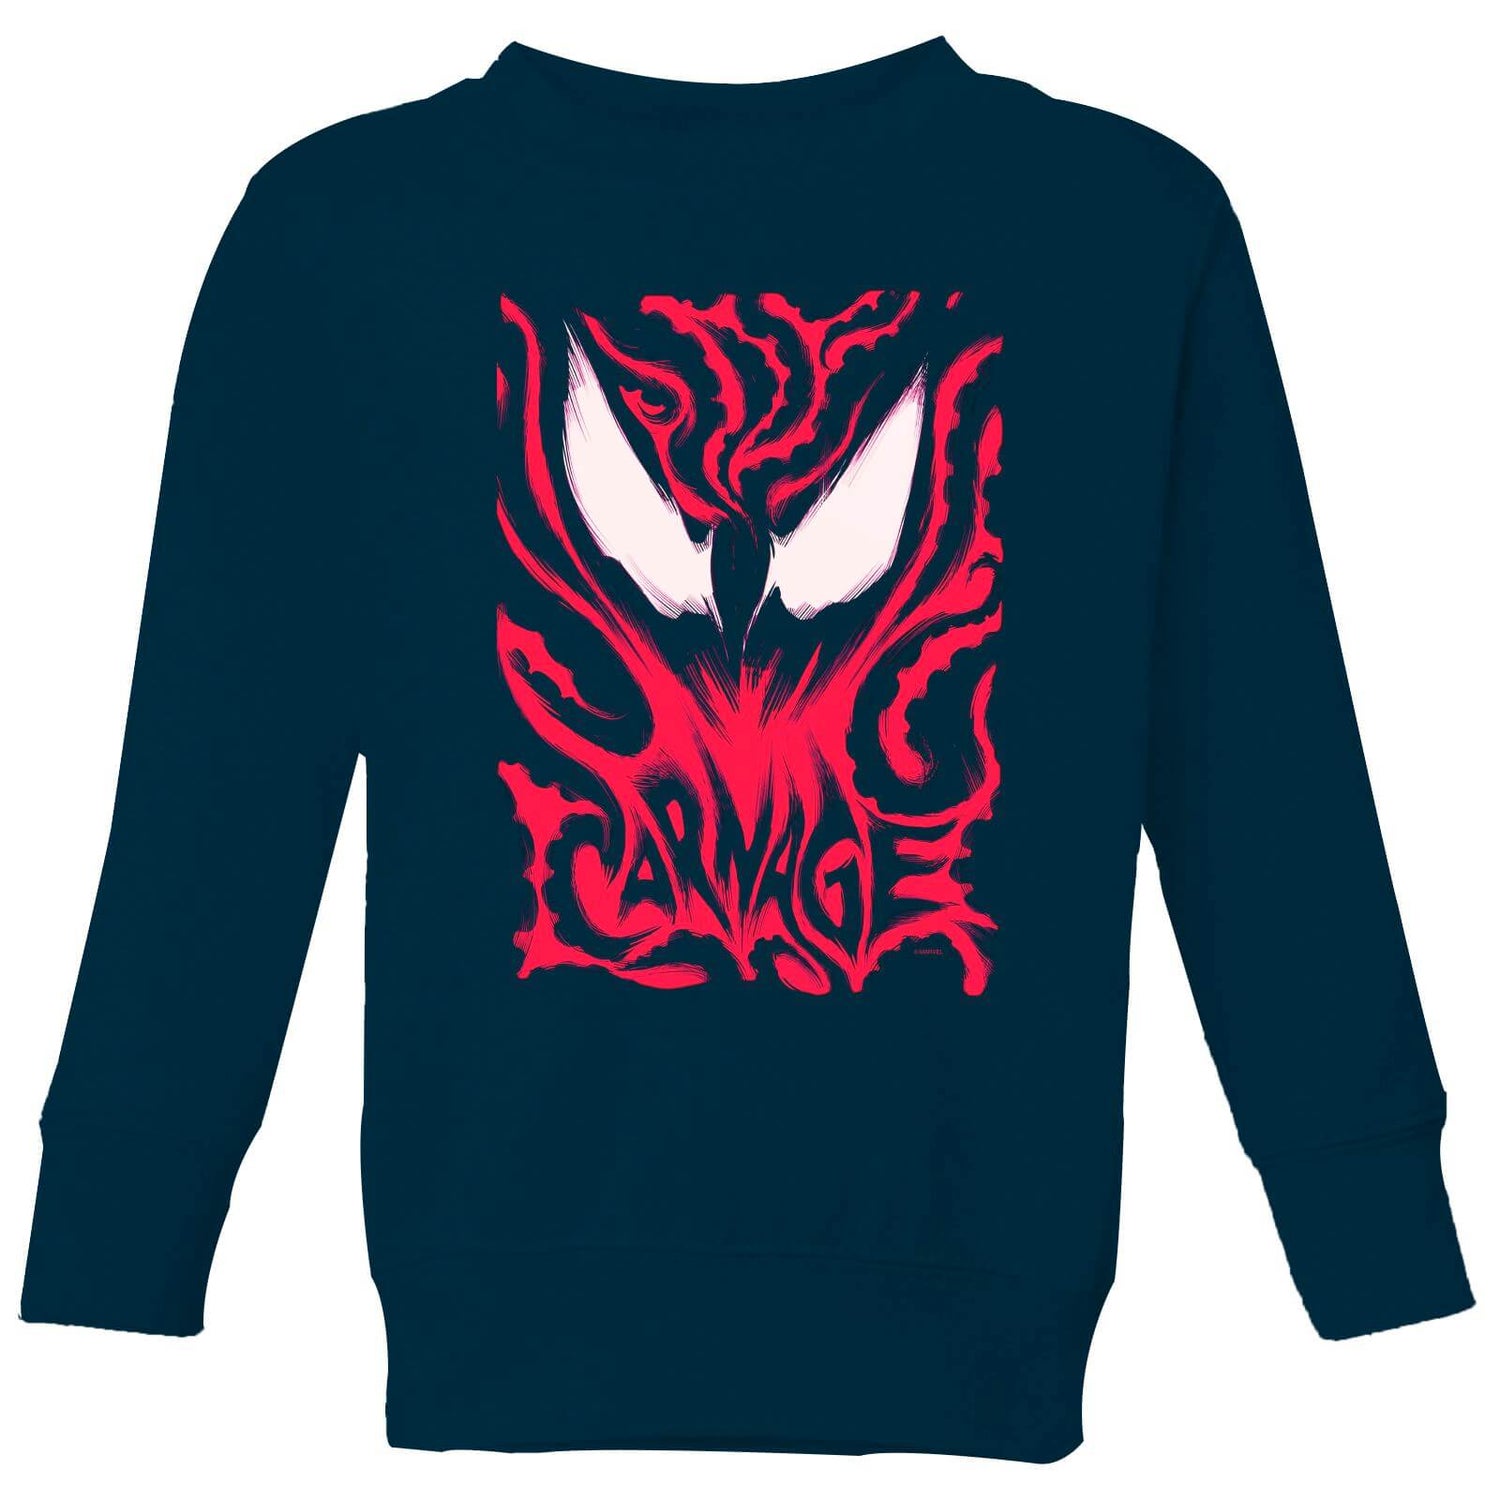 Venom Carnage Kids' Sweatshirt - Navy